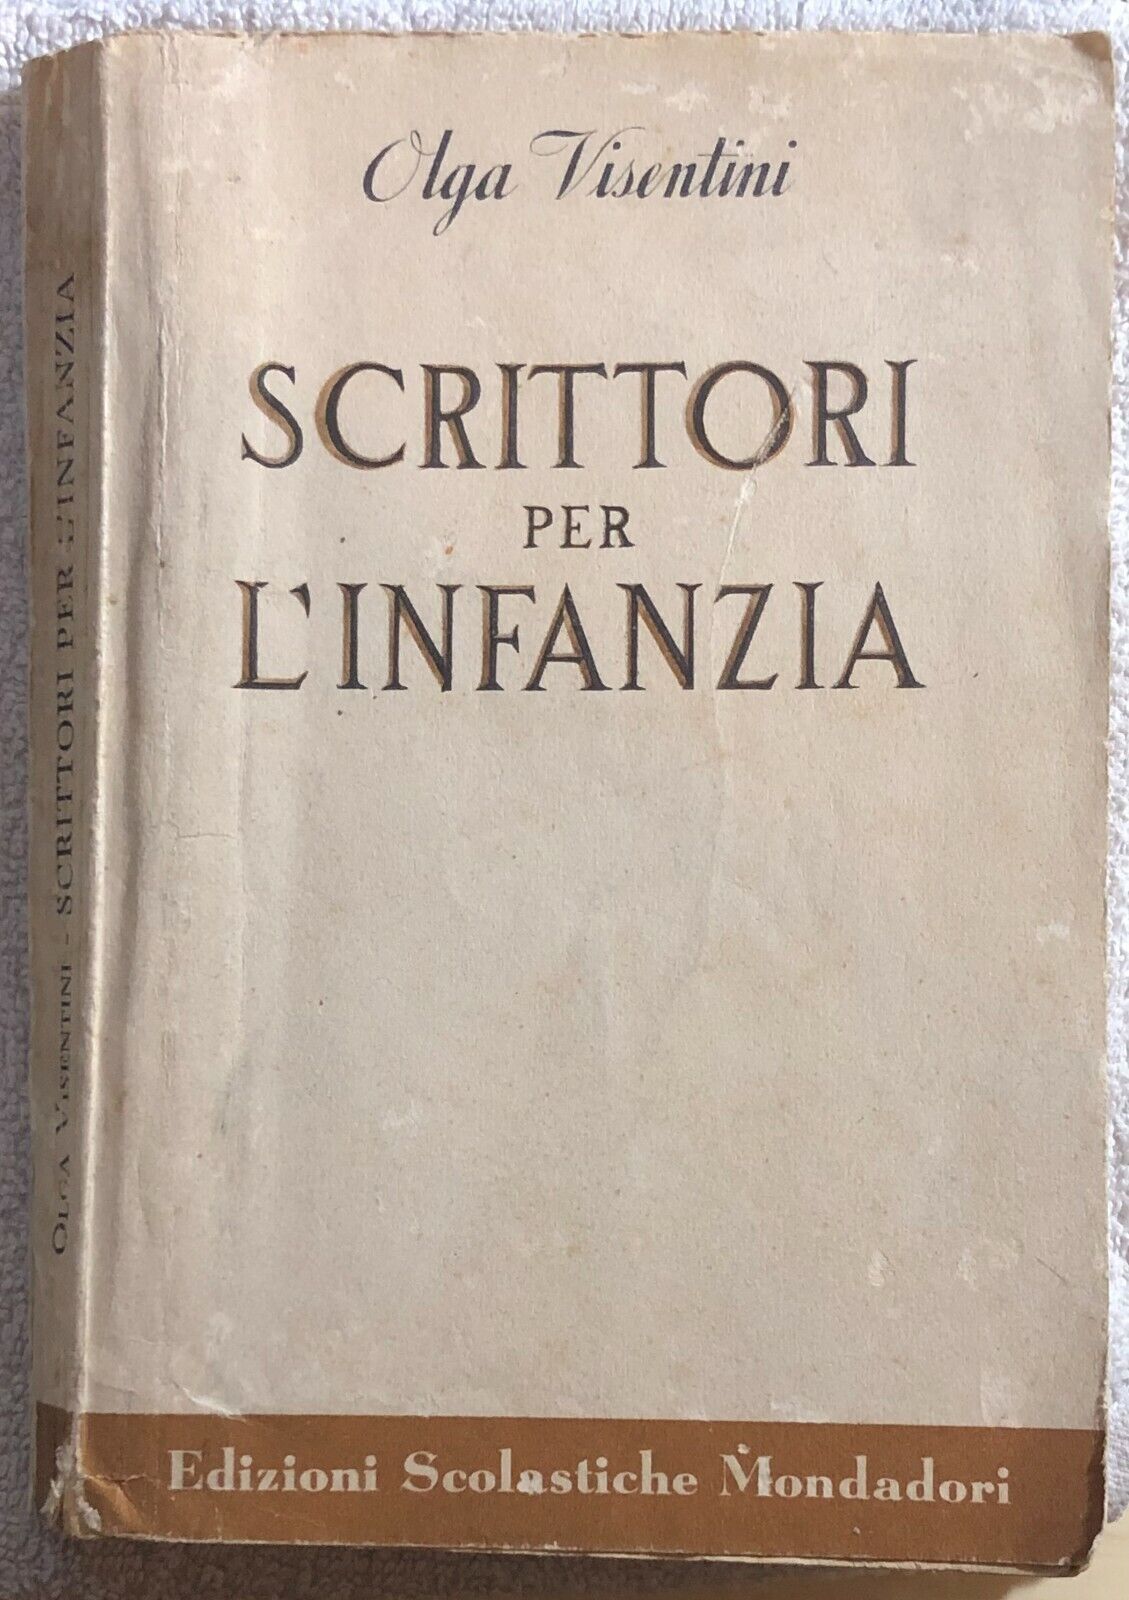 Scrittori per L'infanzia di Olga Visentini,  1953,  Edizioni Scolastiche Mondado